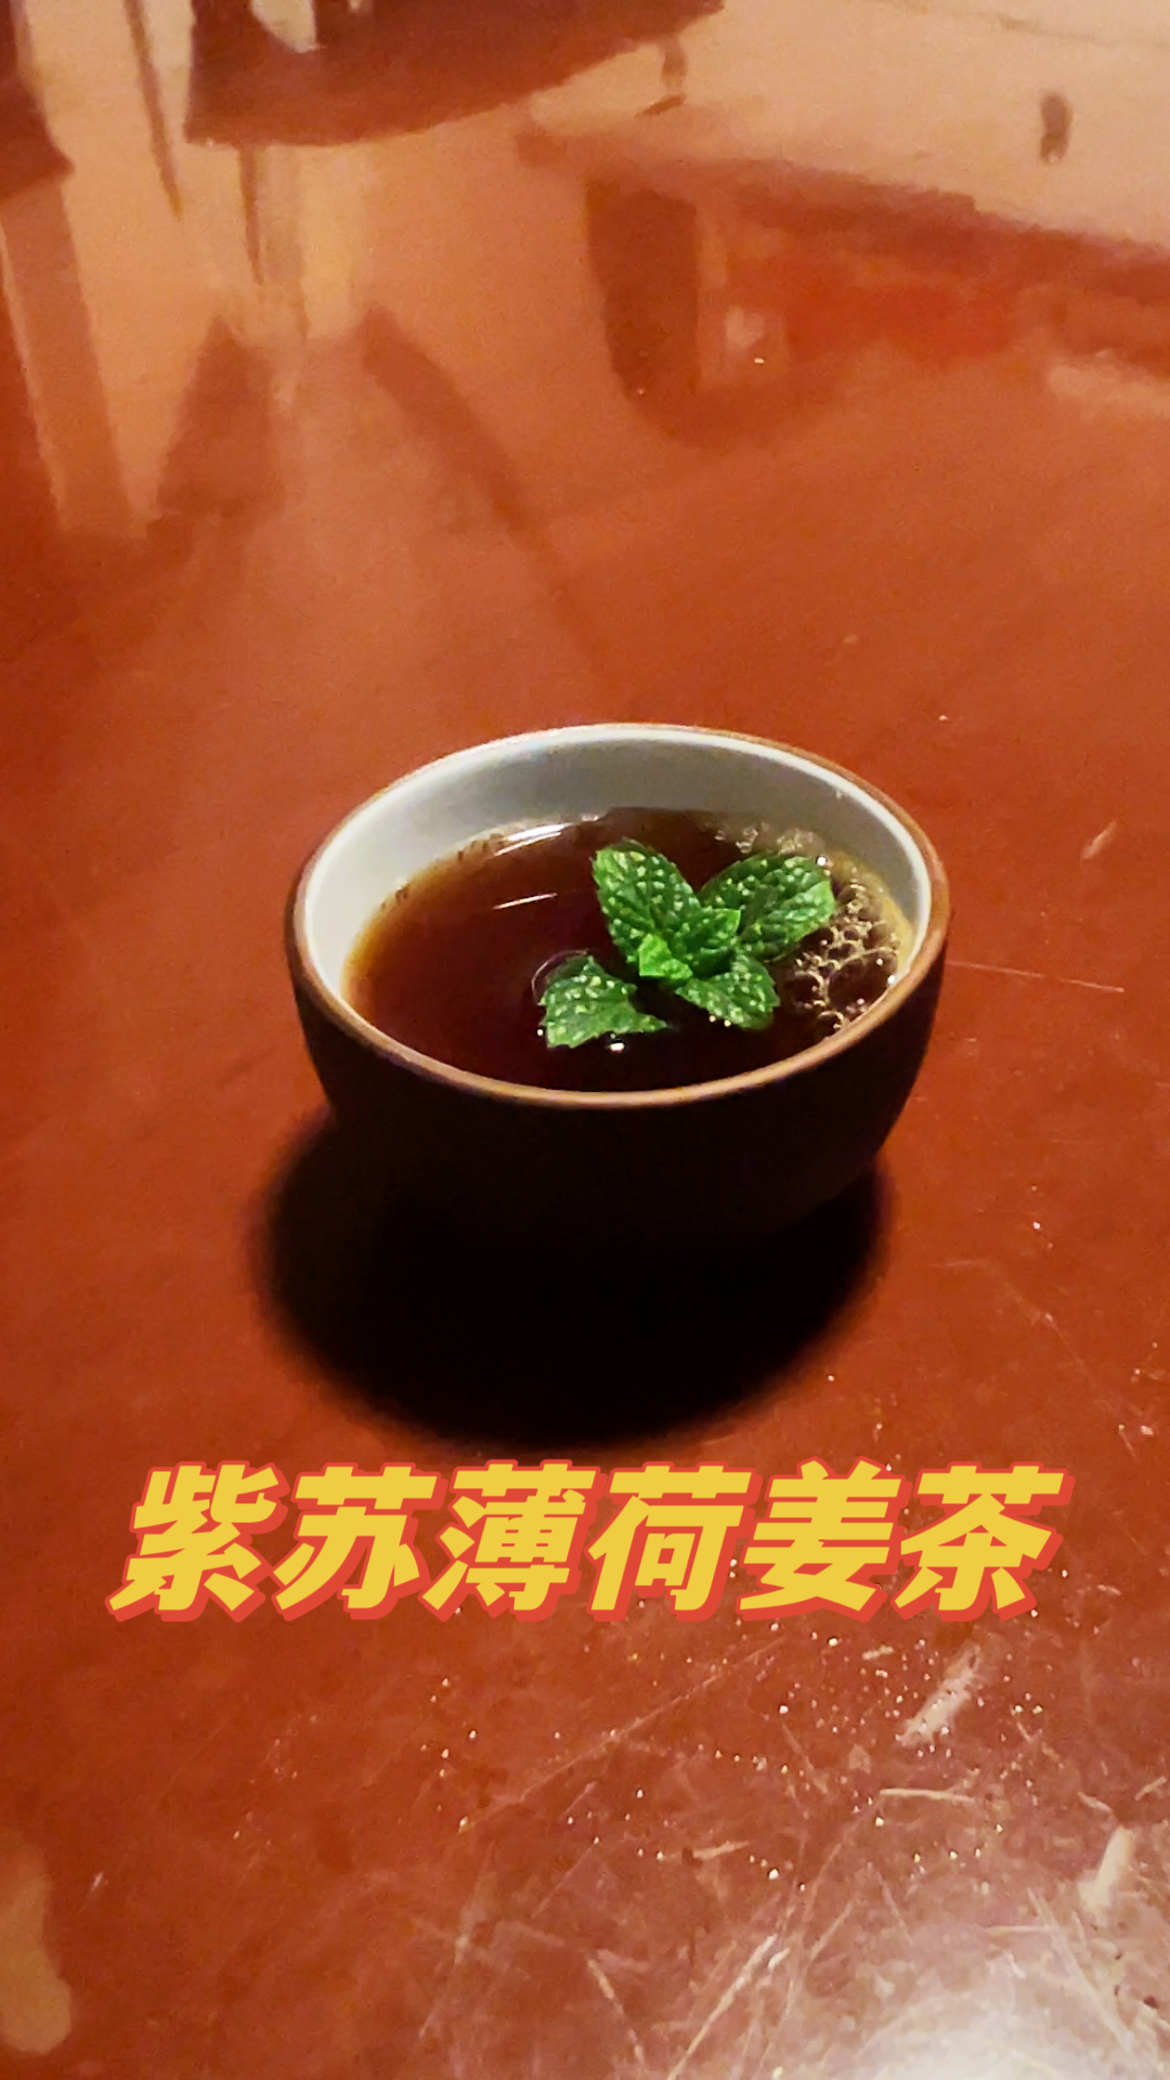 紫苏薄荷姜茶